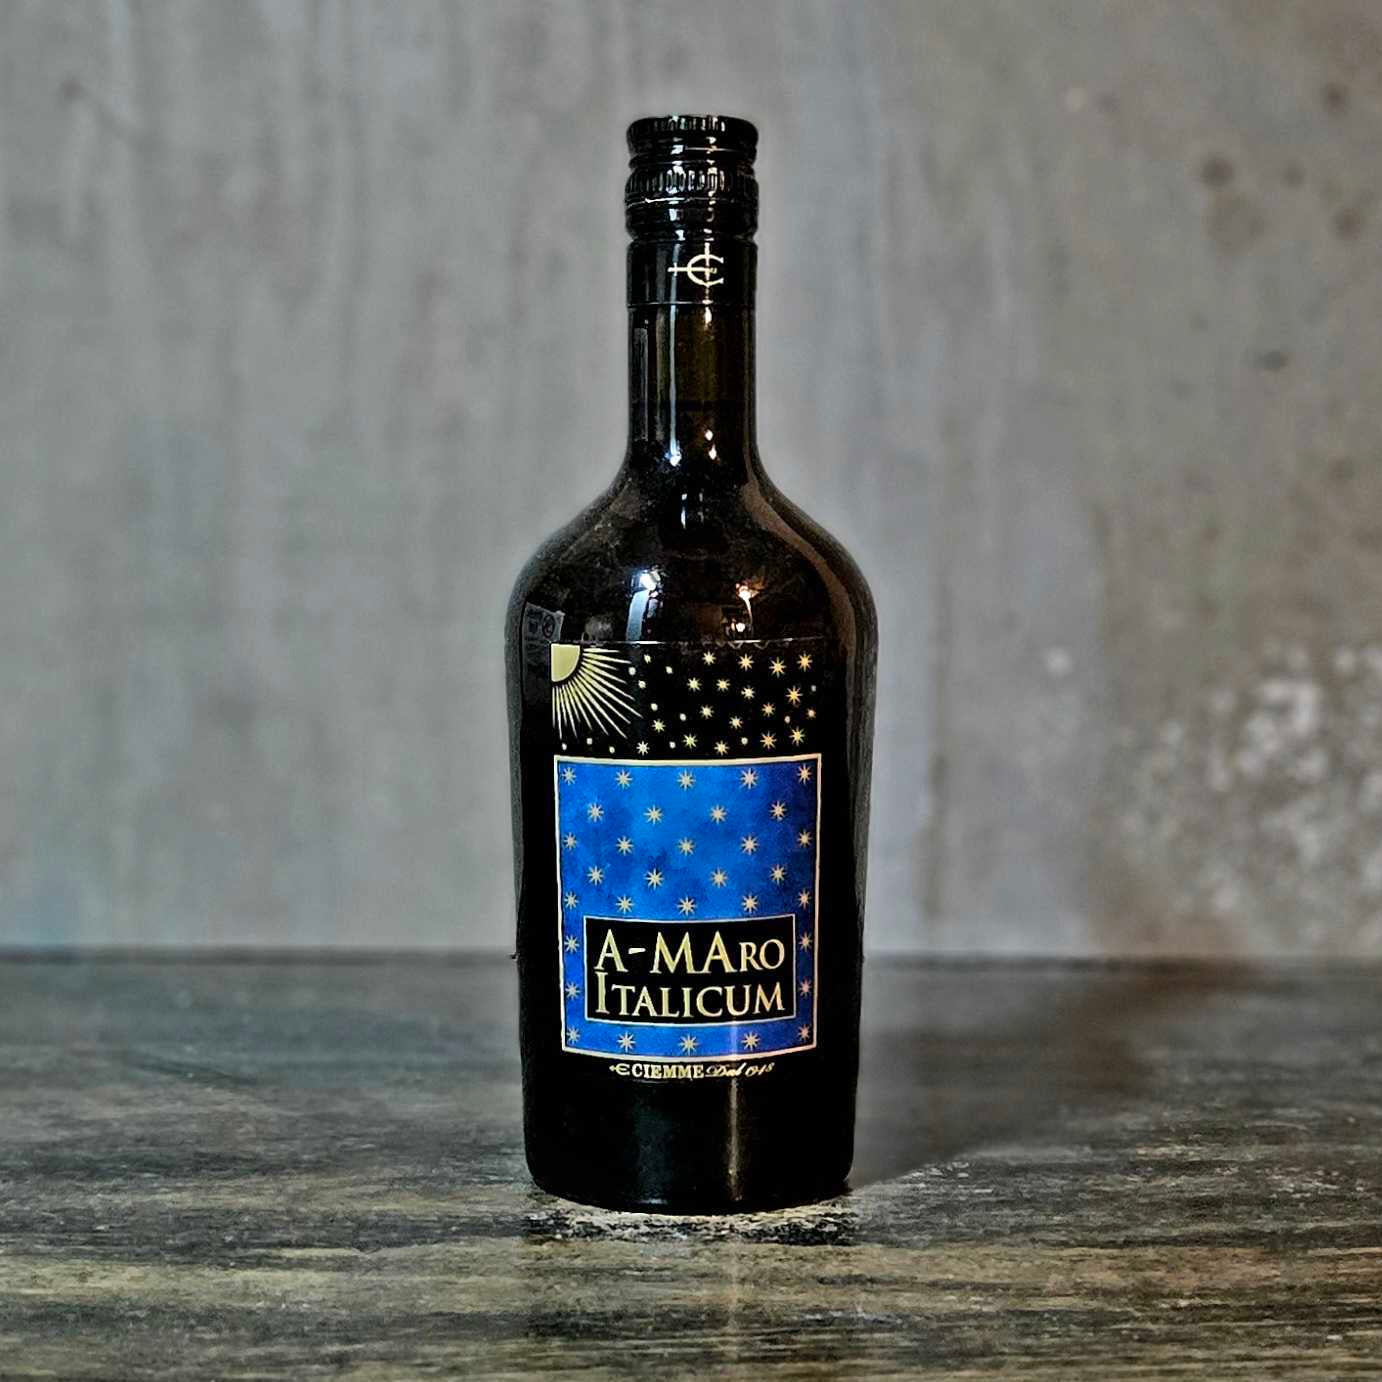 Ciemme Liquori - 'A-Maro Italicum', Amaro, Italy